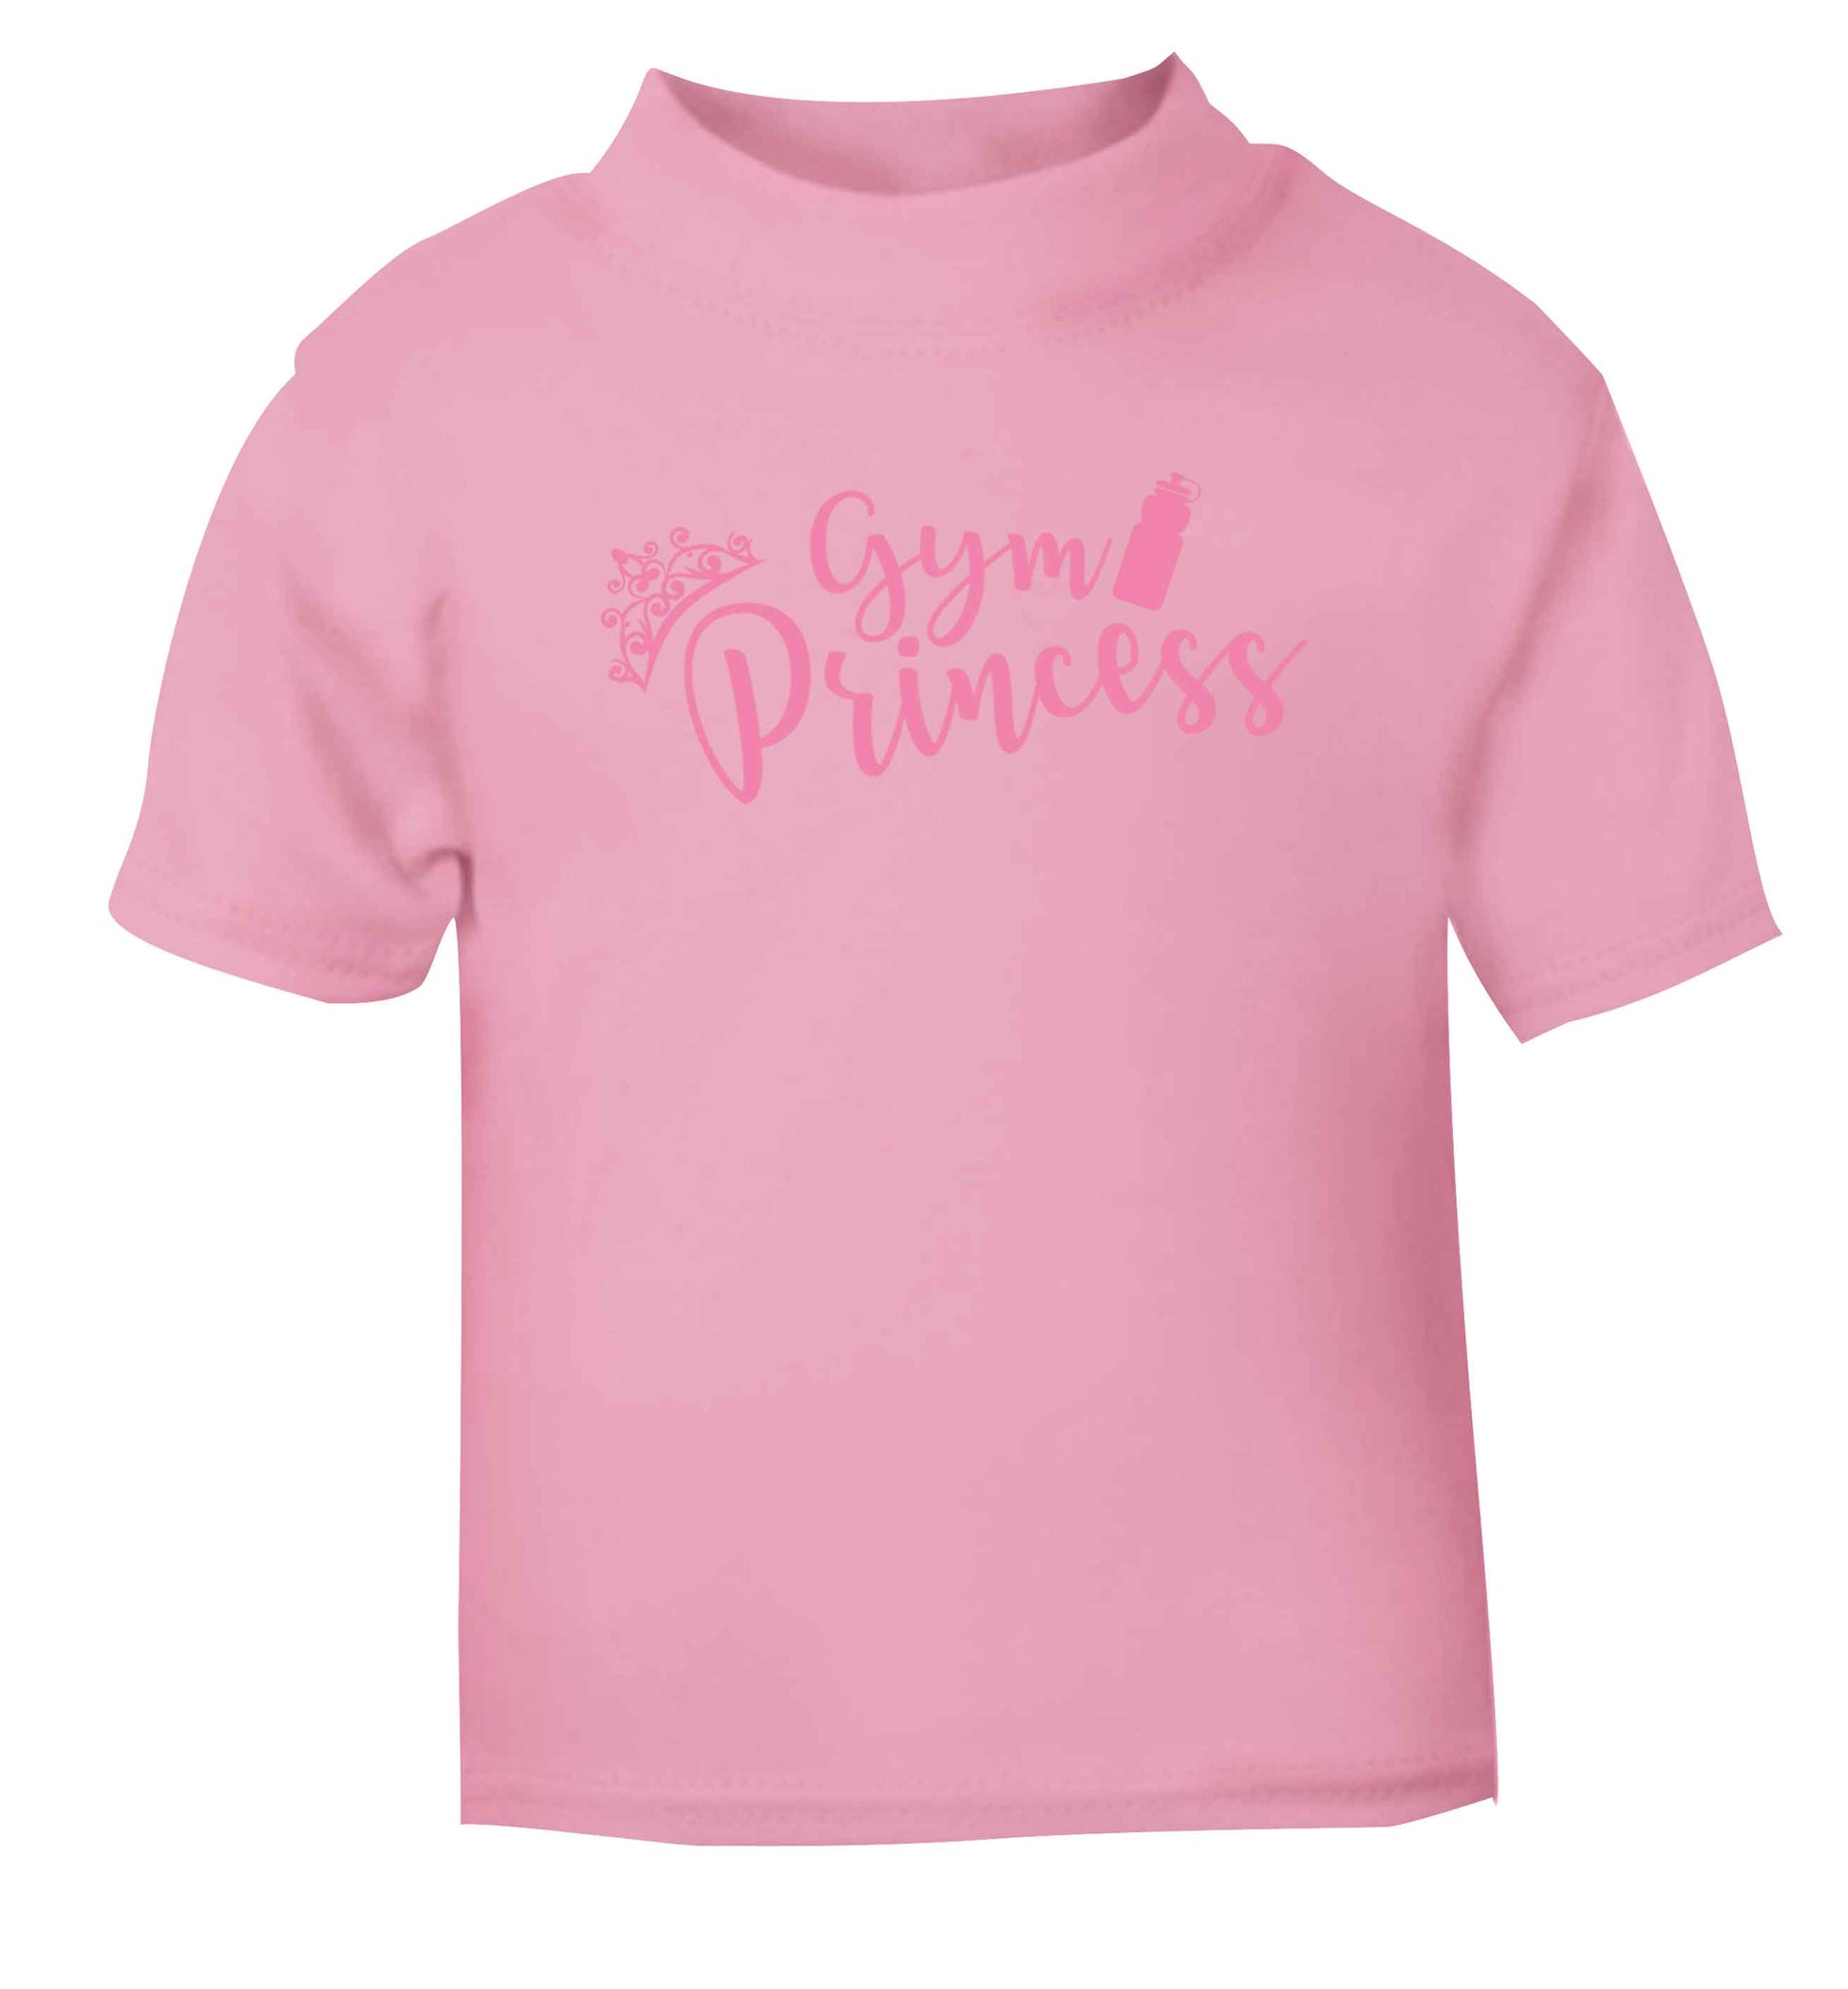 Gym princess light pink Baby Toddler Tshirt 2 Years